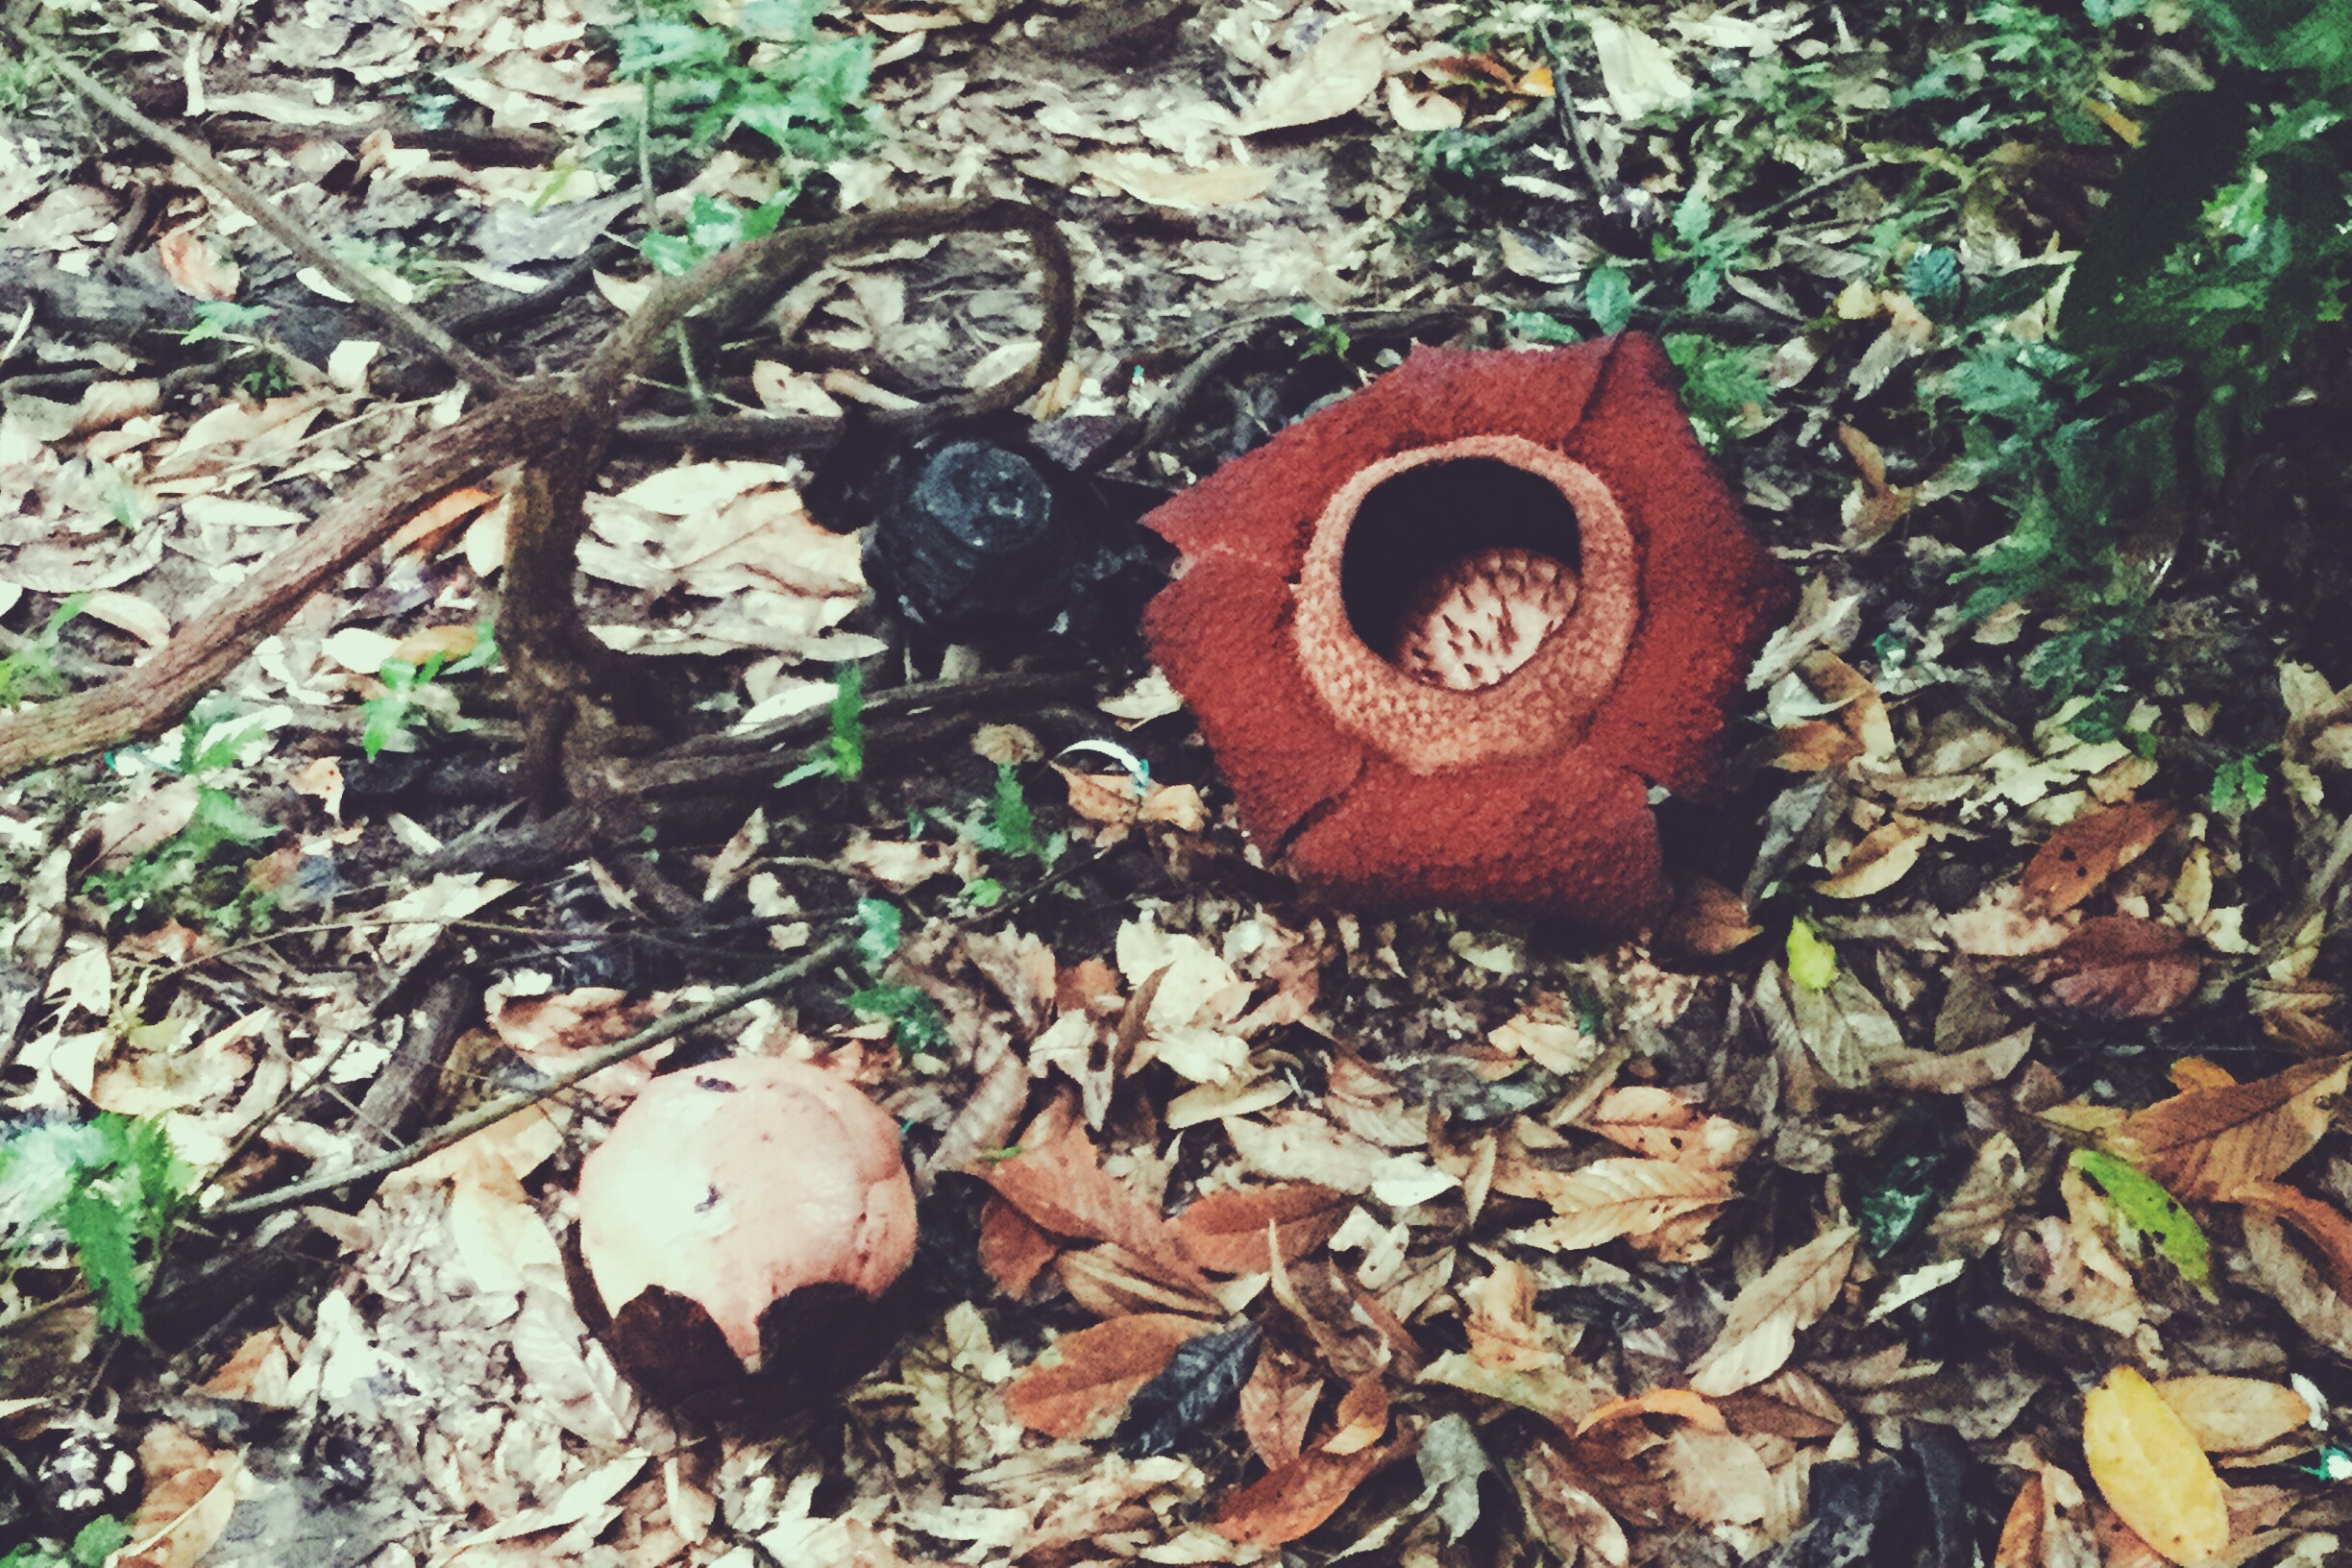 Rafflesia Borneo